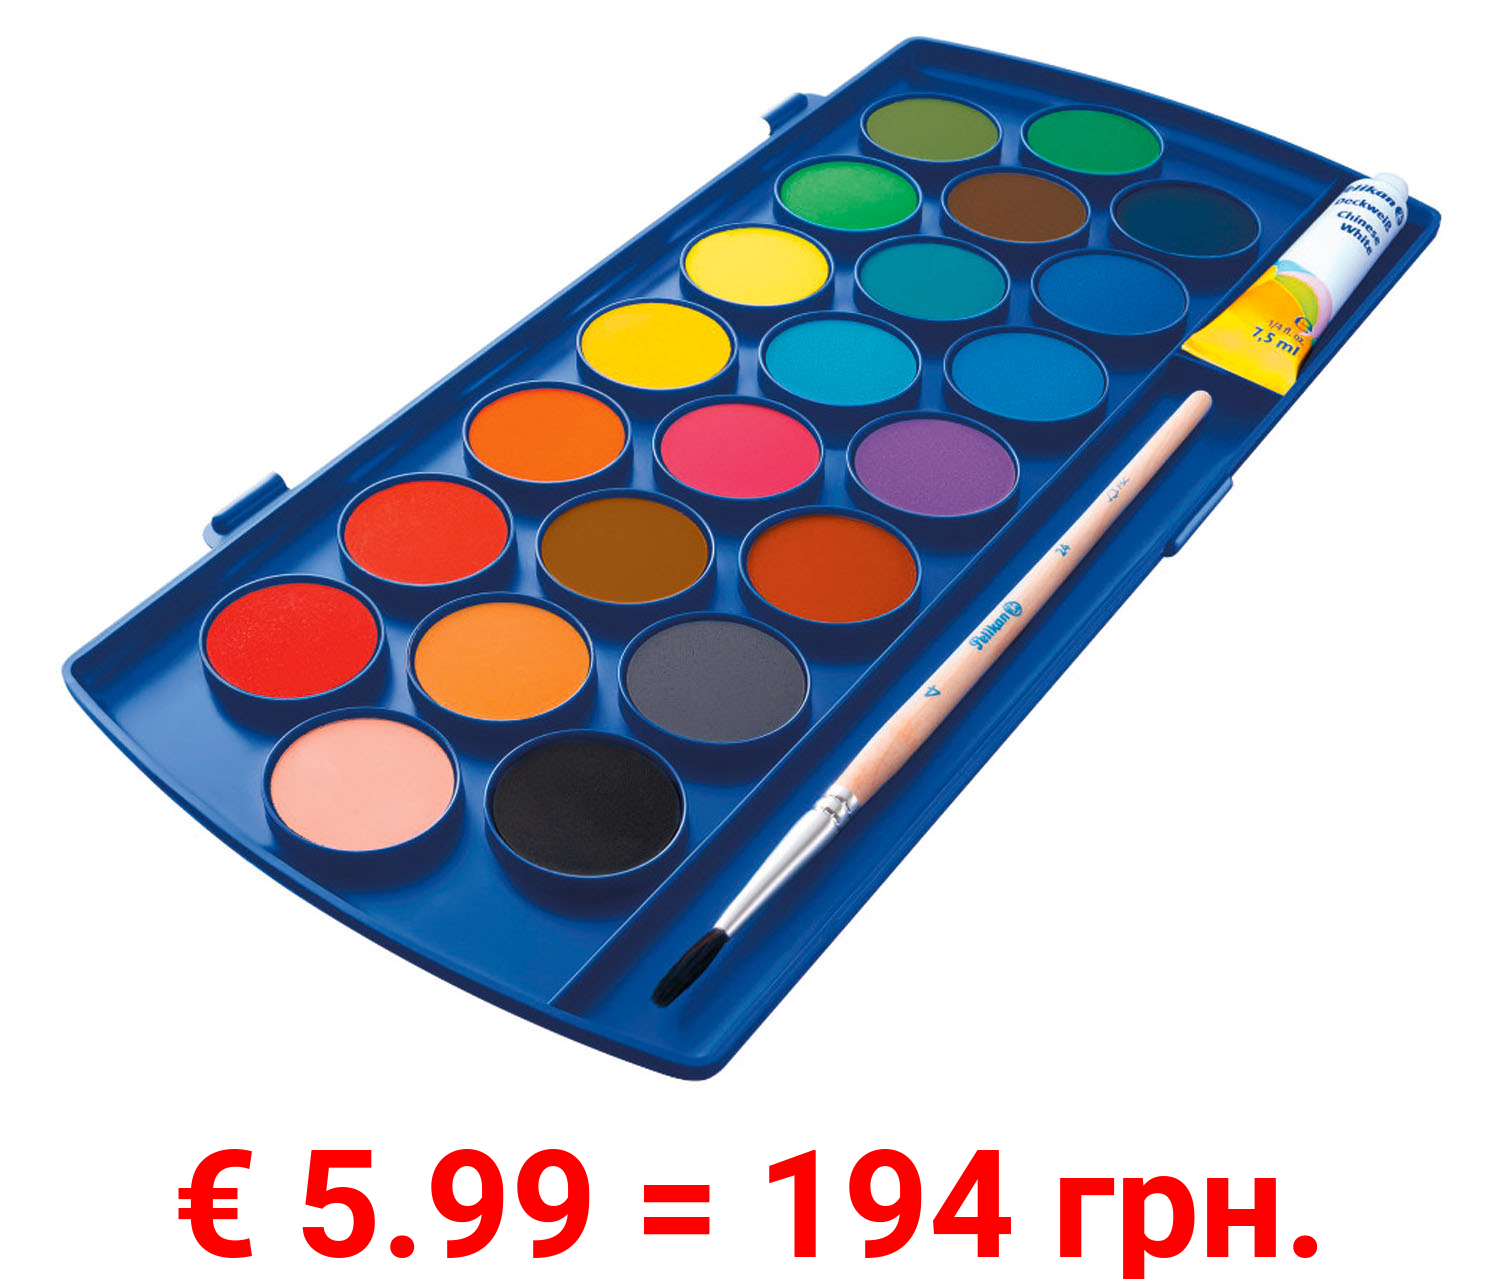 Pelikan Farbkasten, 22 Qualitätsfarben, mit Pinsel und Deckweiß